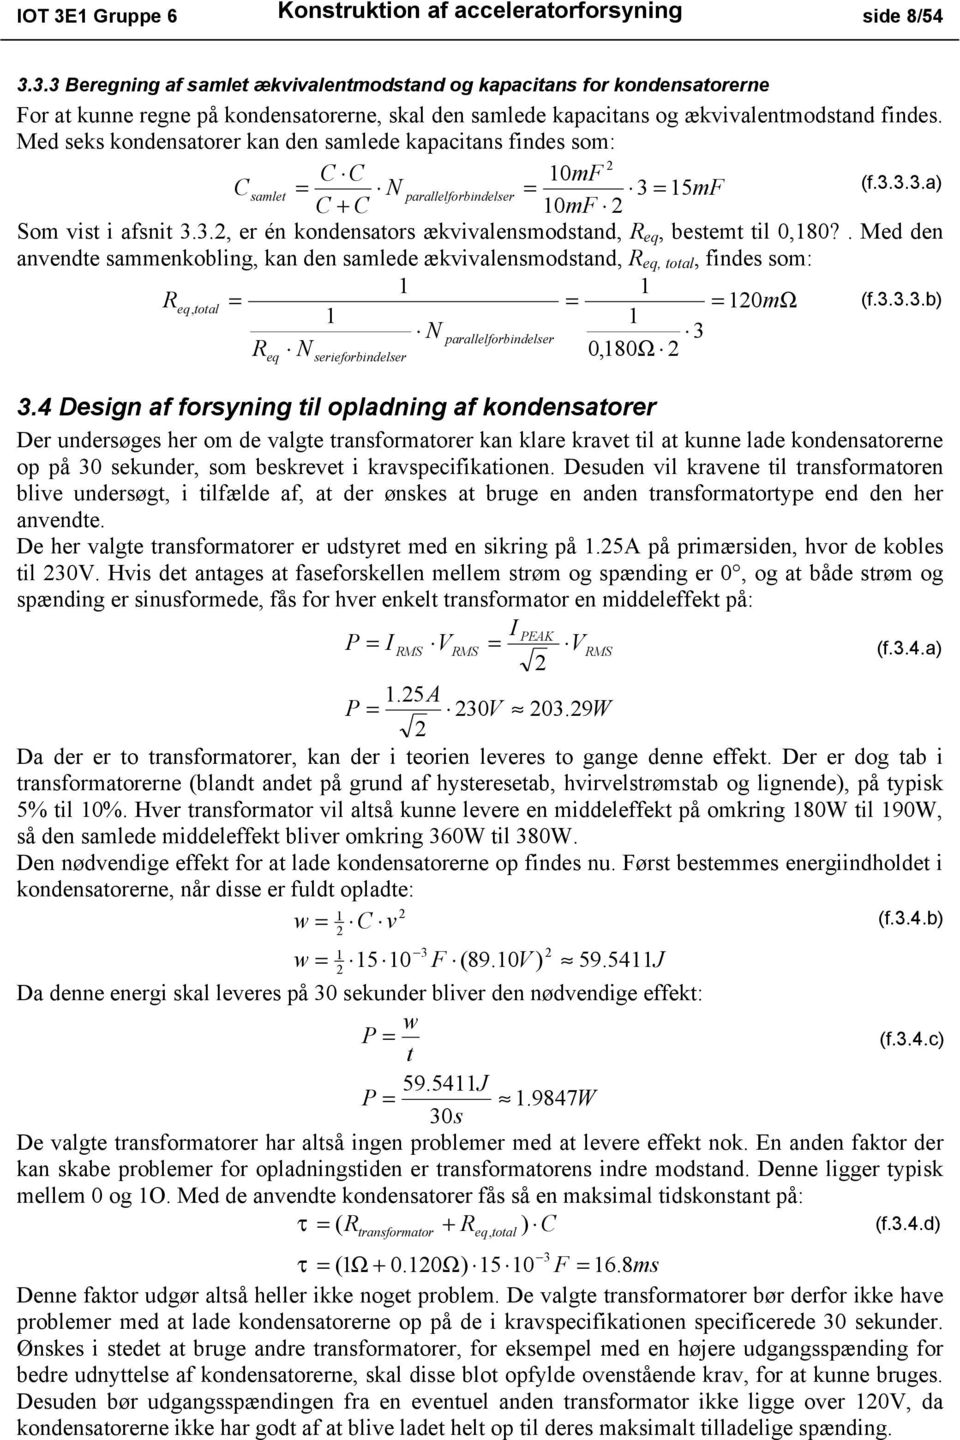 Me seks konensatorer kan en salee kapacitans fines so: C C 0F Csalet = N parallelforbinelser = 3 = 5F (f.3.3.3.a) C + C 0F So vist i afsnit 3.3., er én konensators ækvivalensostan, R eq, bestet til 0,80?